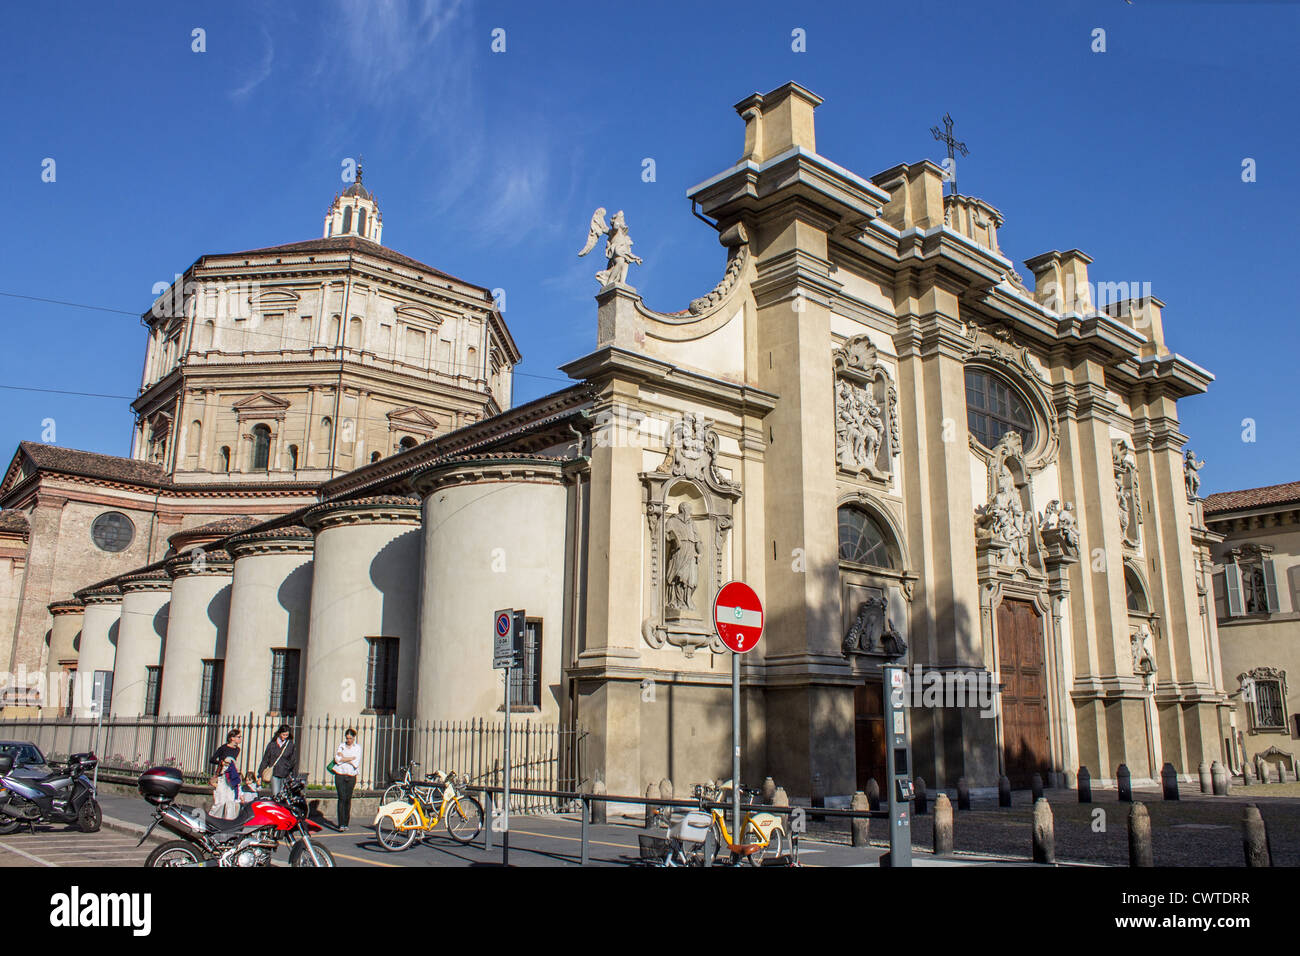 Italy, Lombardy, Milan, Santa Maria della Passione church Stock Photo